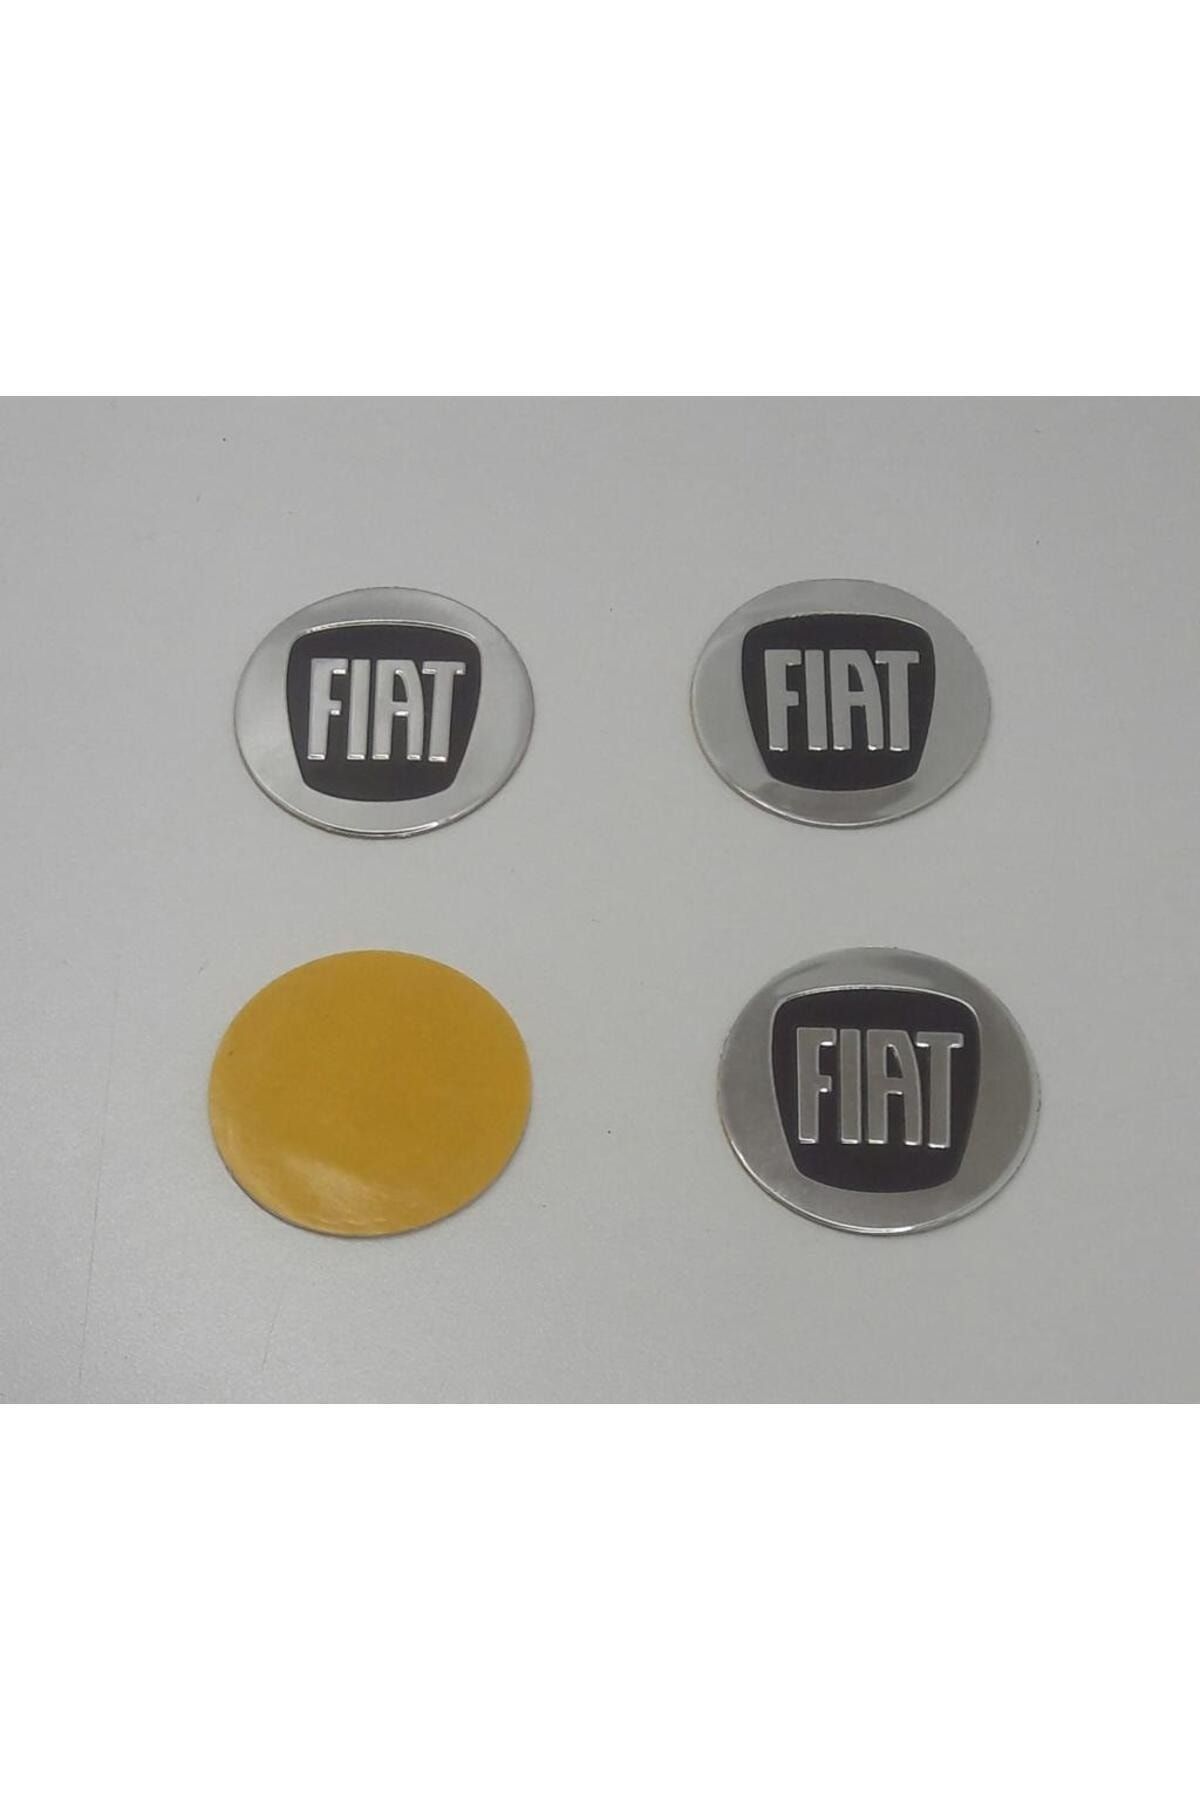 Fiat Jant Göbeği Etiketi 52mm Çap